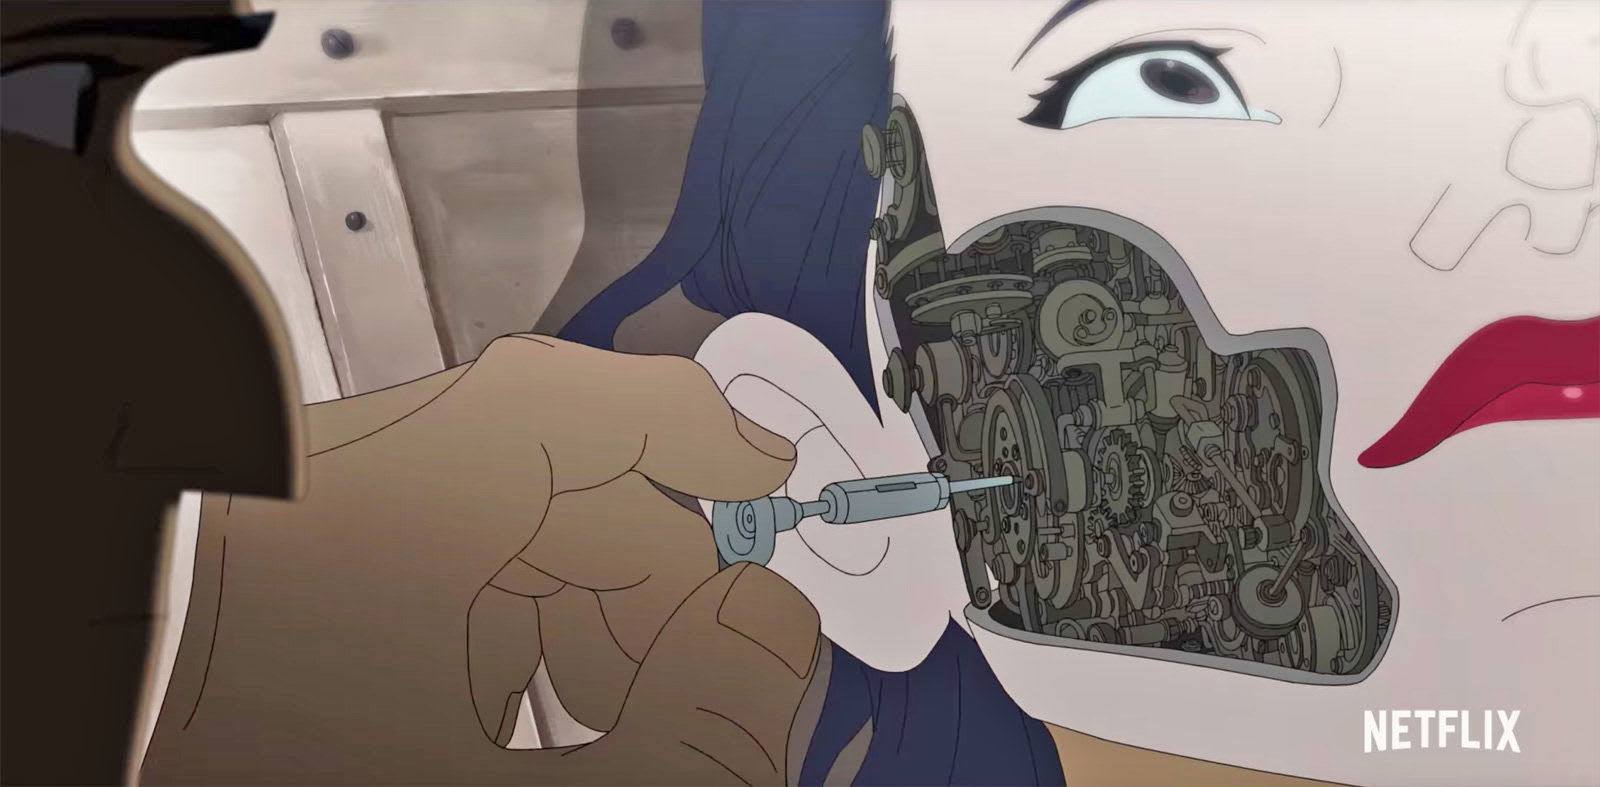 デヴィッド フィンチャー監督のアニメ短編集 Love Death And Robots 予告編 刺激強めの大人向け作品 Engadget 日本版